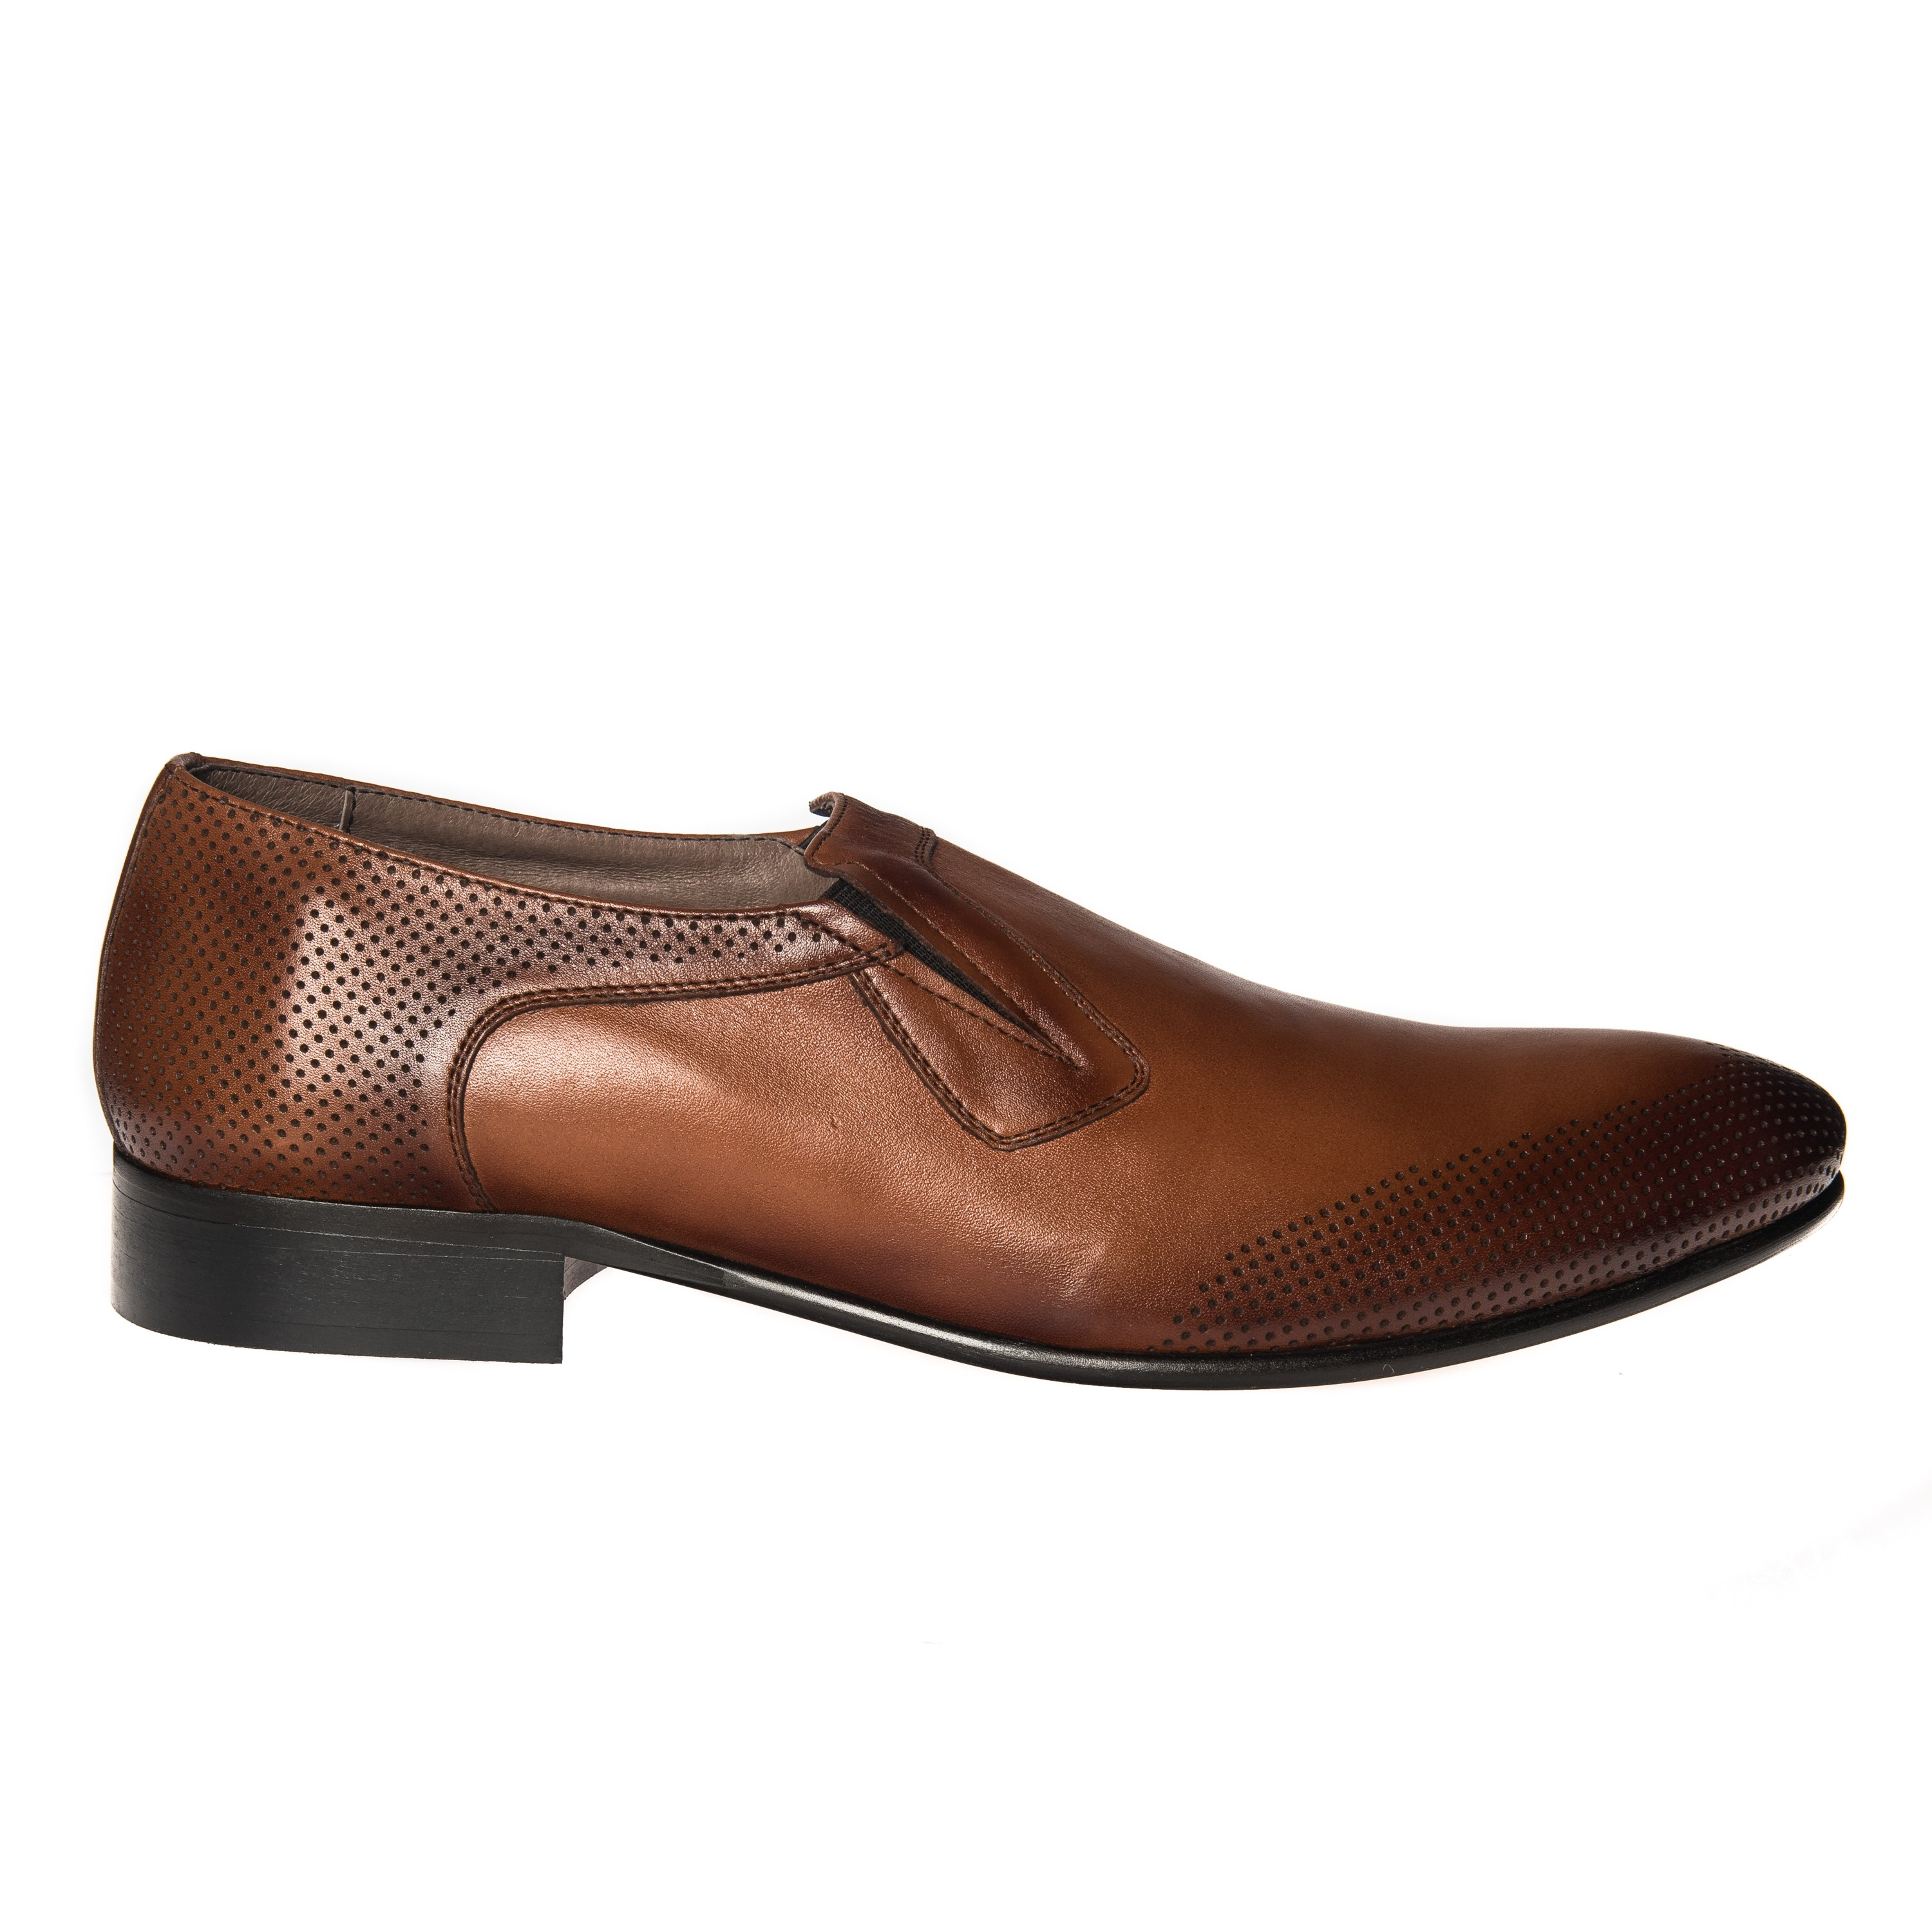 Pantofi barbati din piele naturala - Maro Perie - E 401 MP